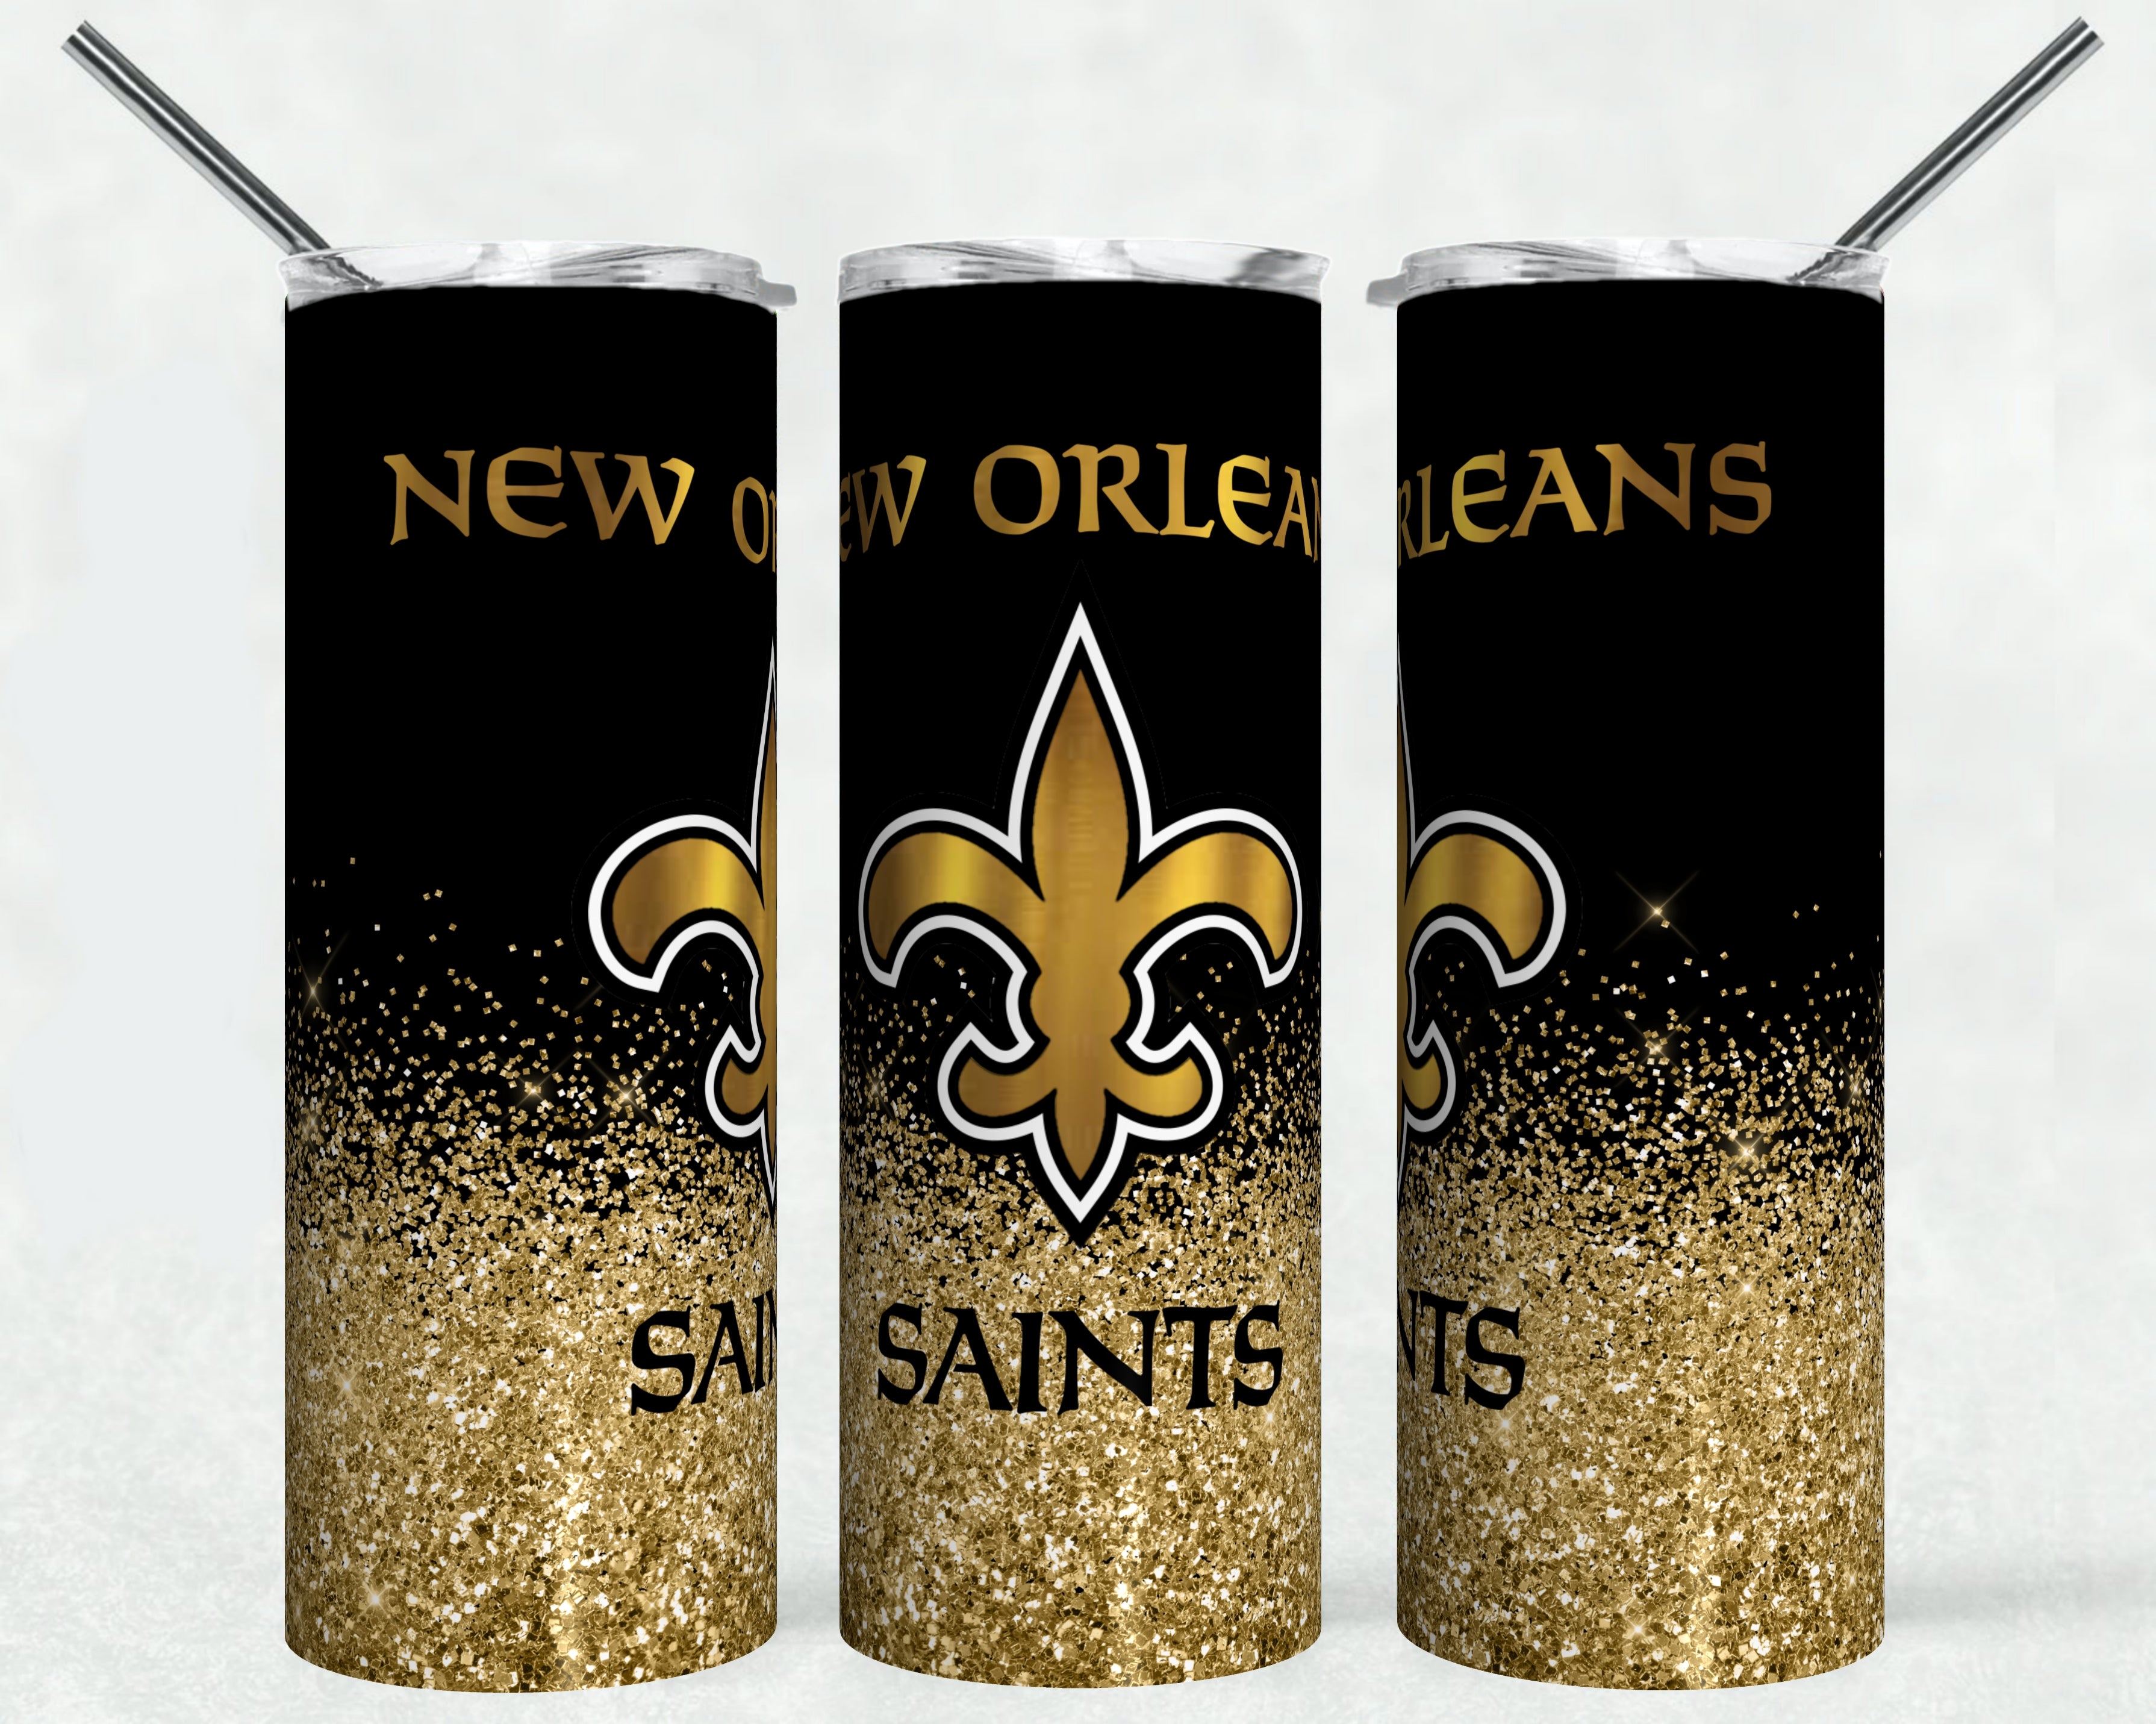 New Orleans Saints Tumbler 20oz